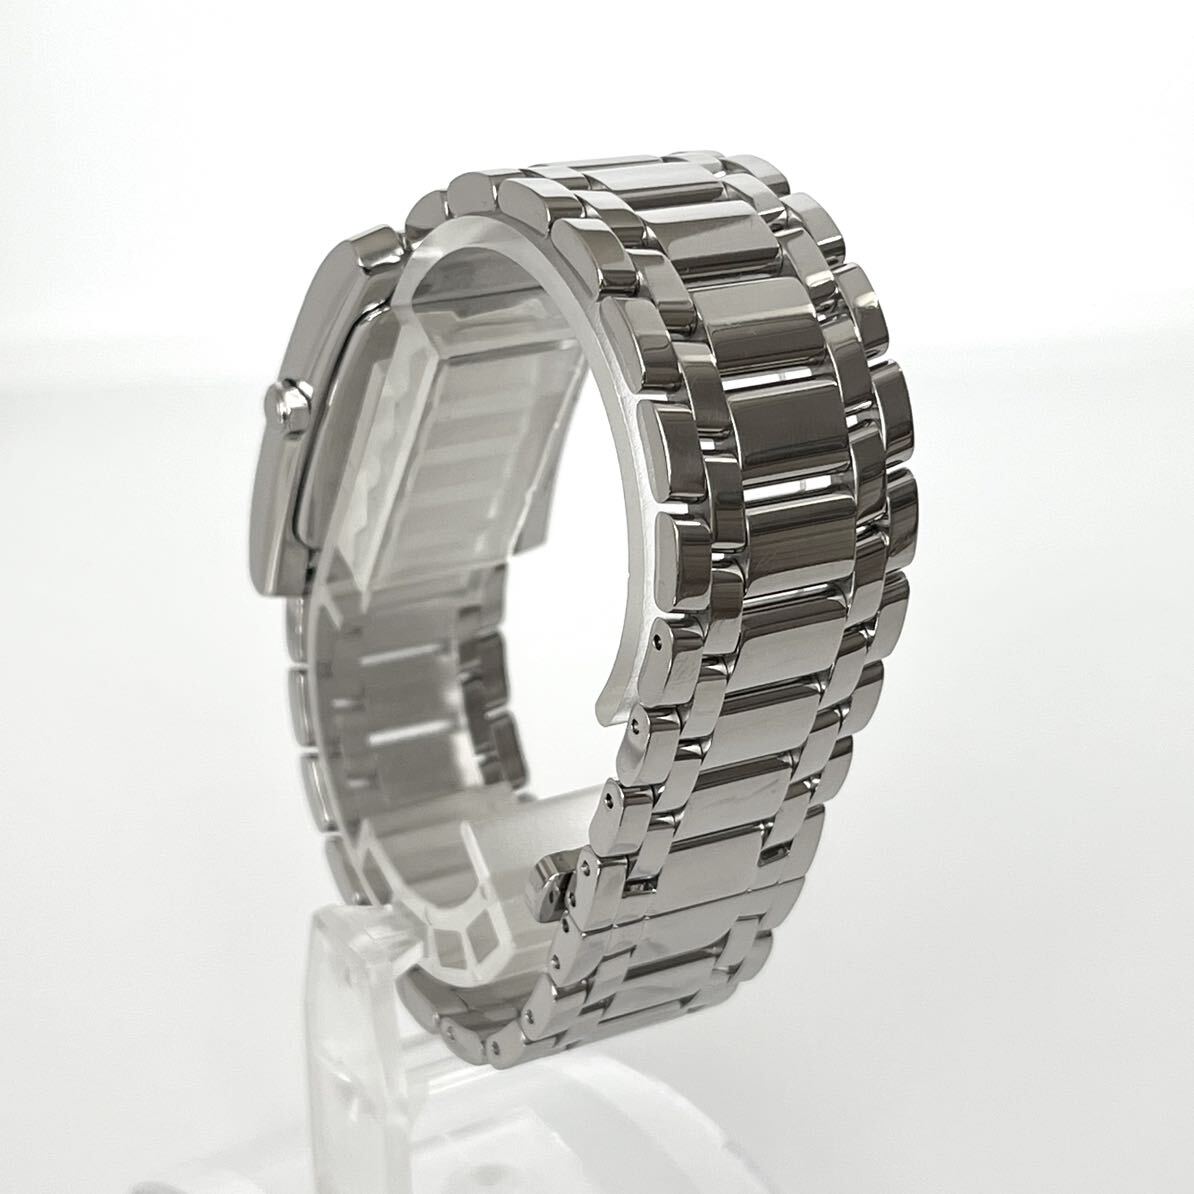 [ работа ] отполирован Fendi FENDI 7000G мужские наручные часы прекрасный товар батарейка новый товар чёрный циферблат s1516